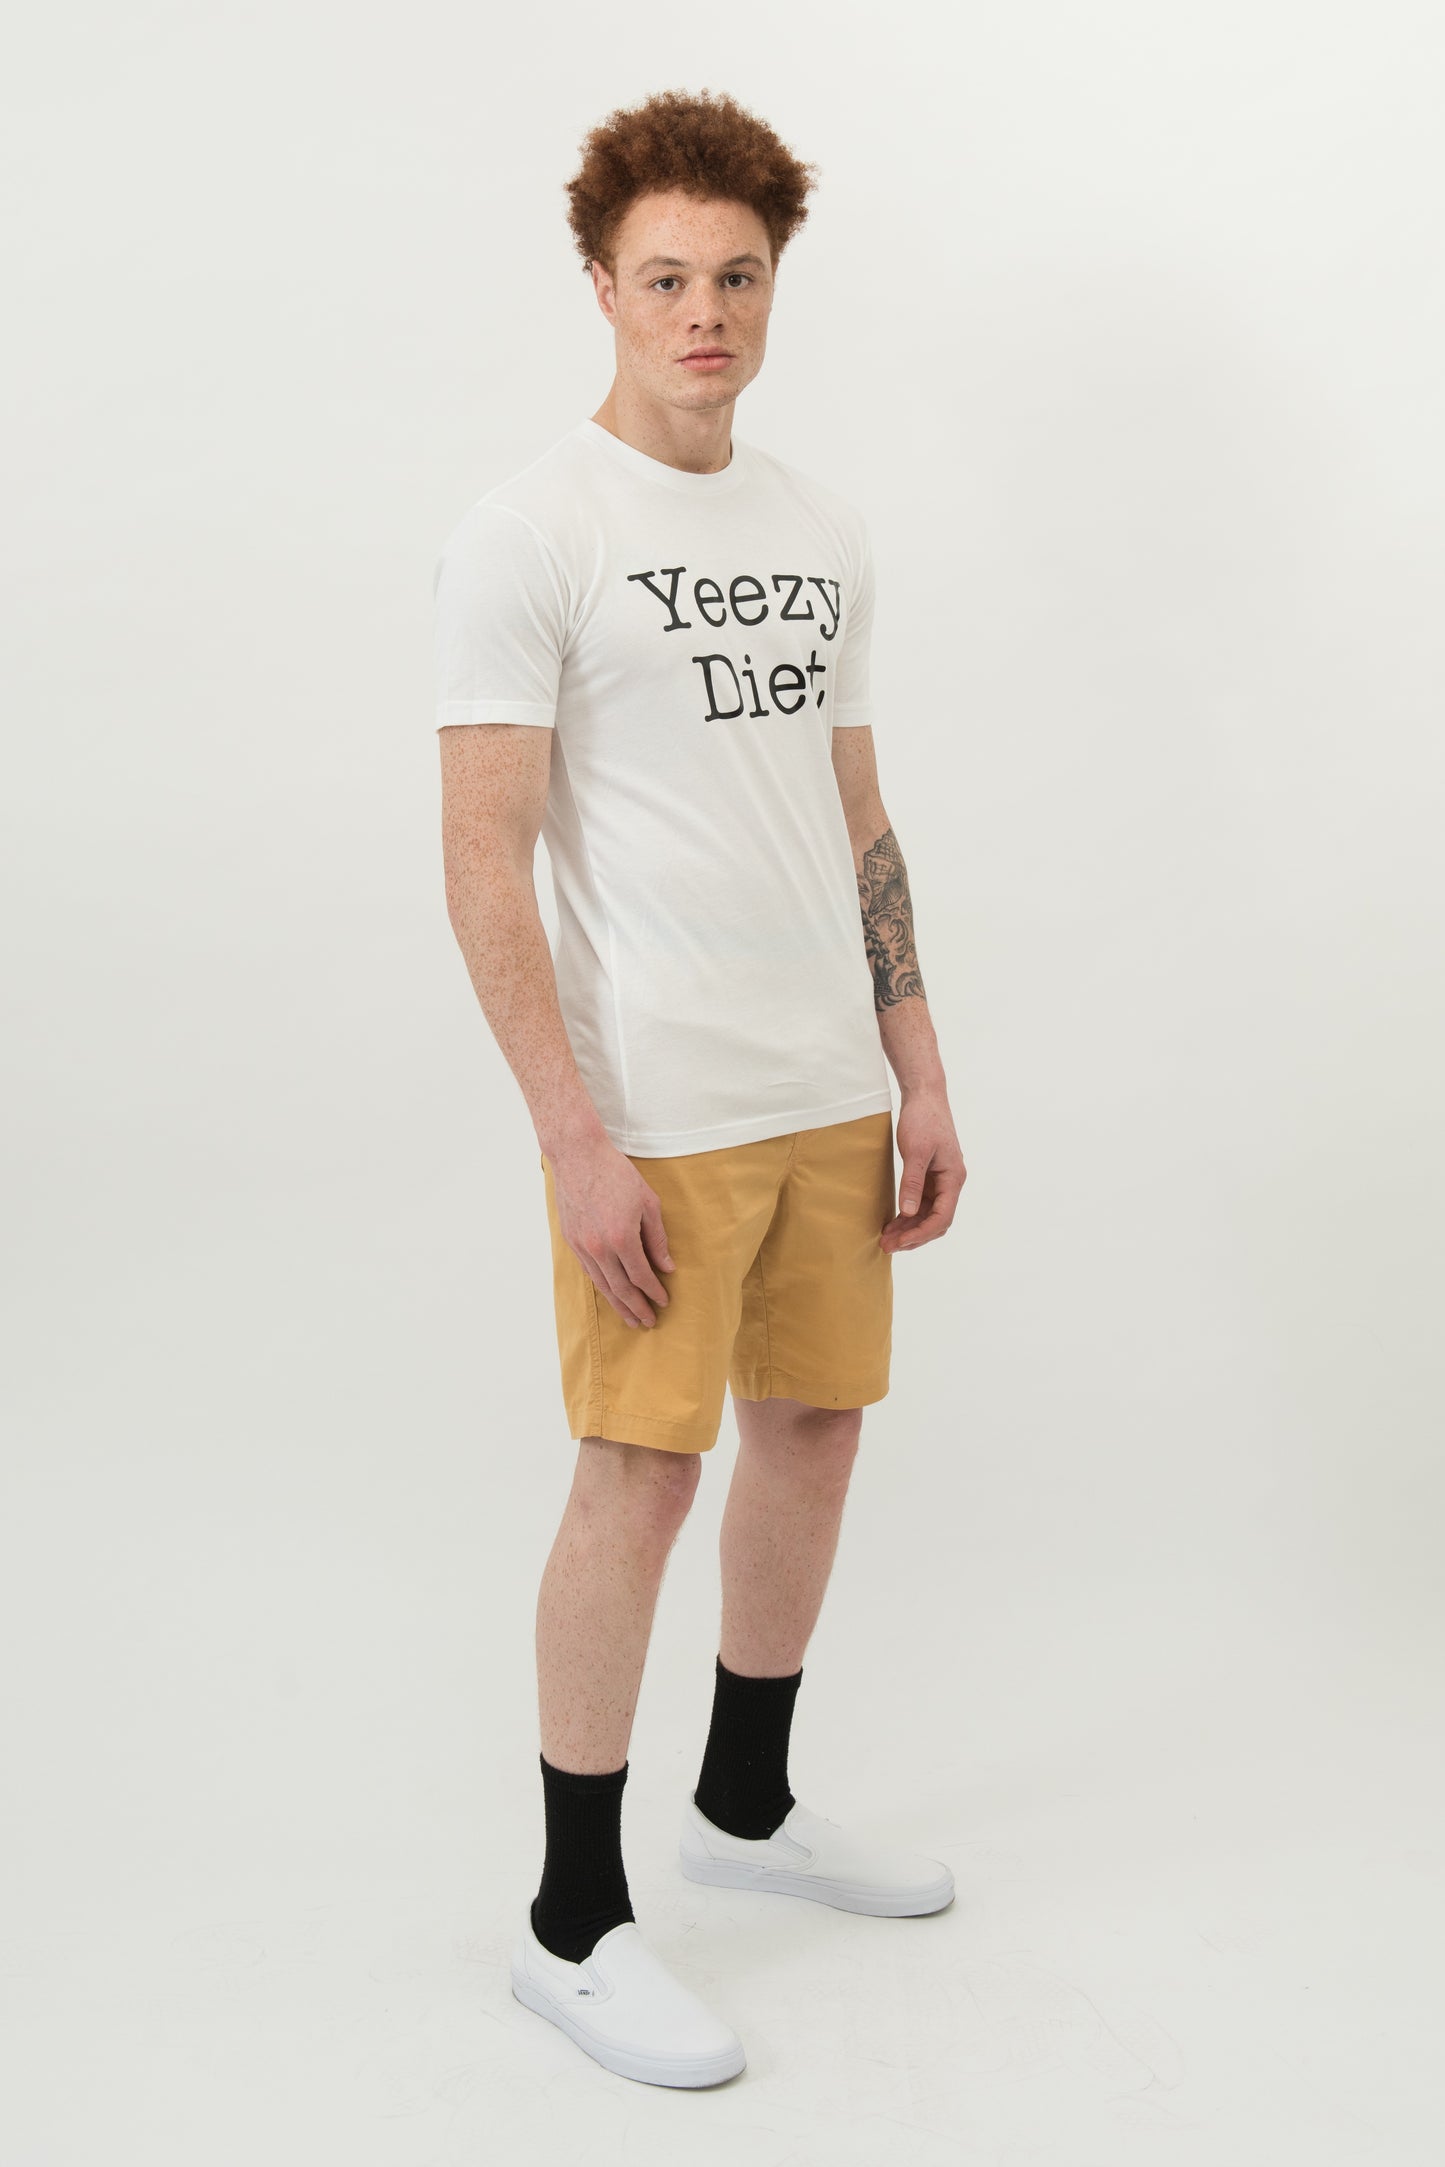 Yeezy Diet T-Shirt Unisex